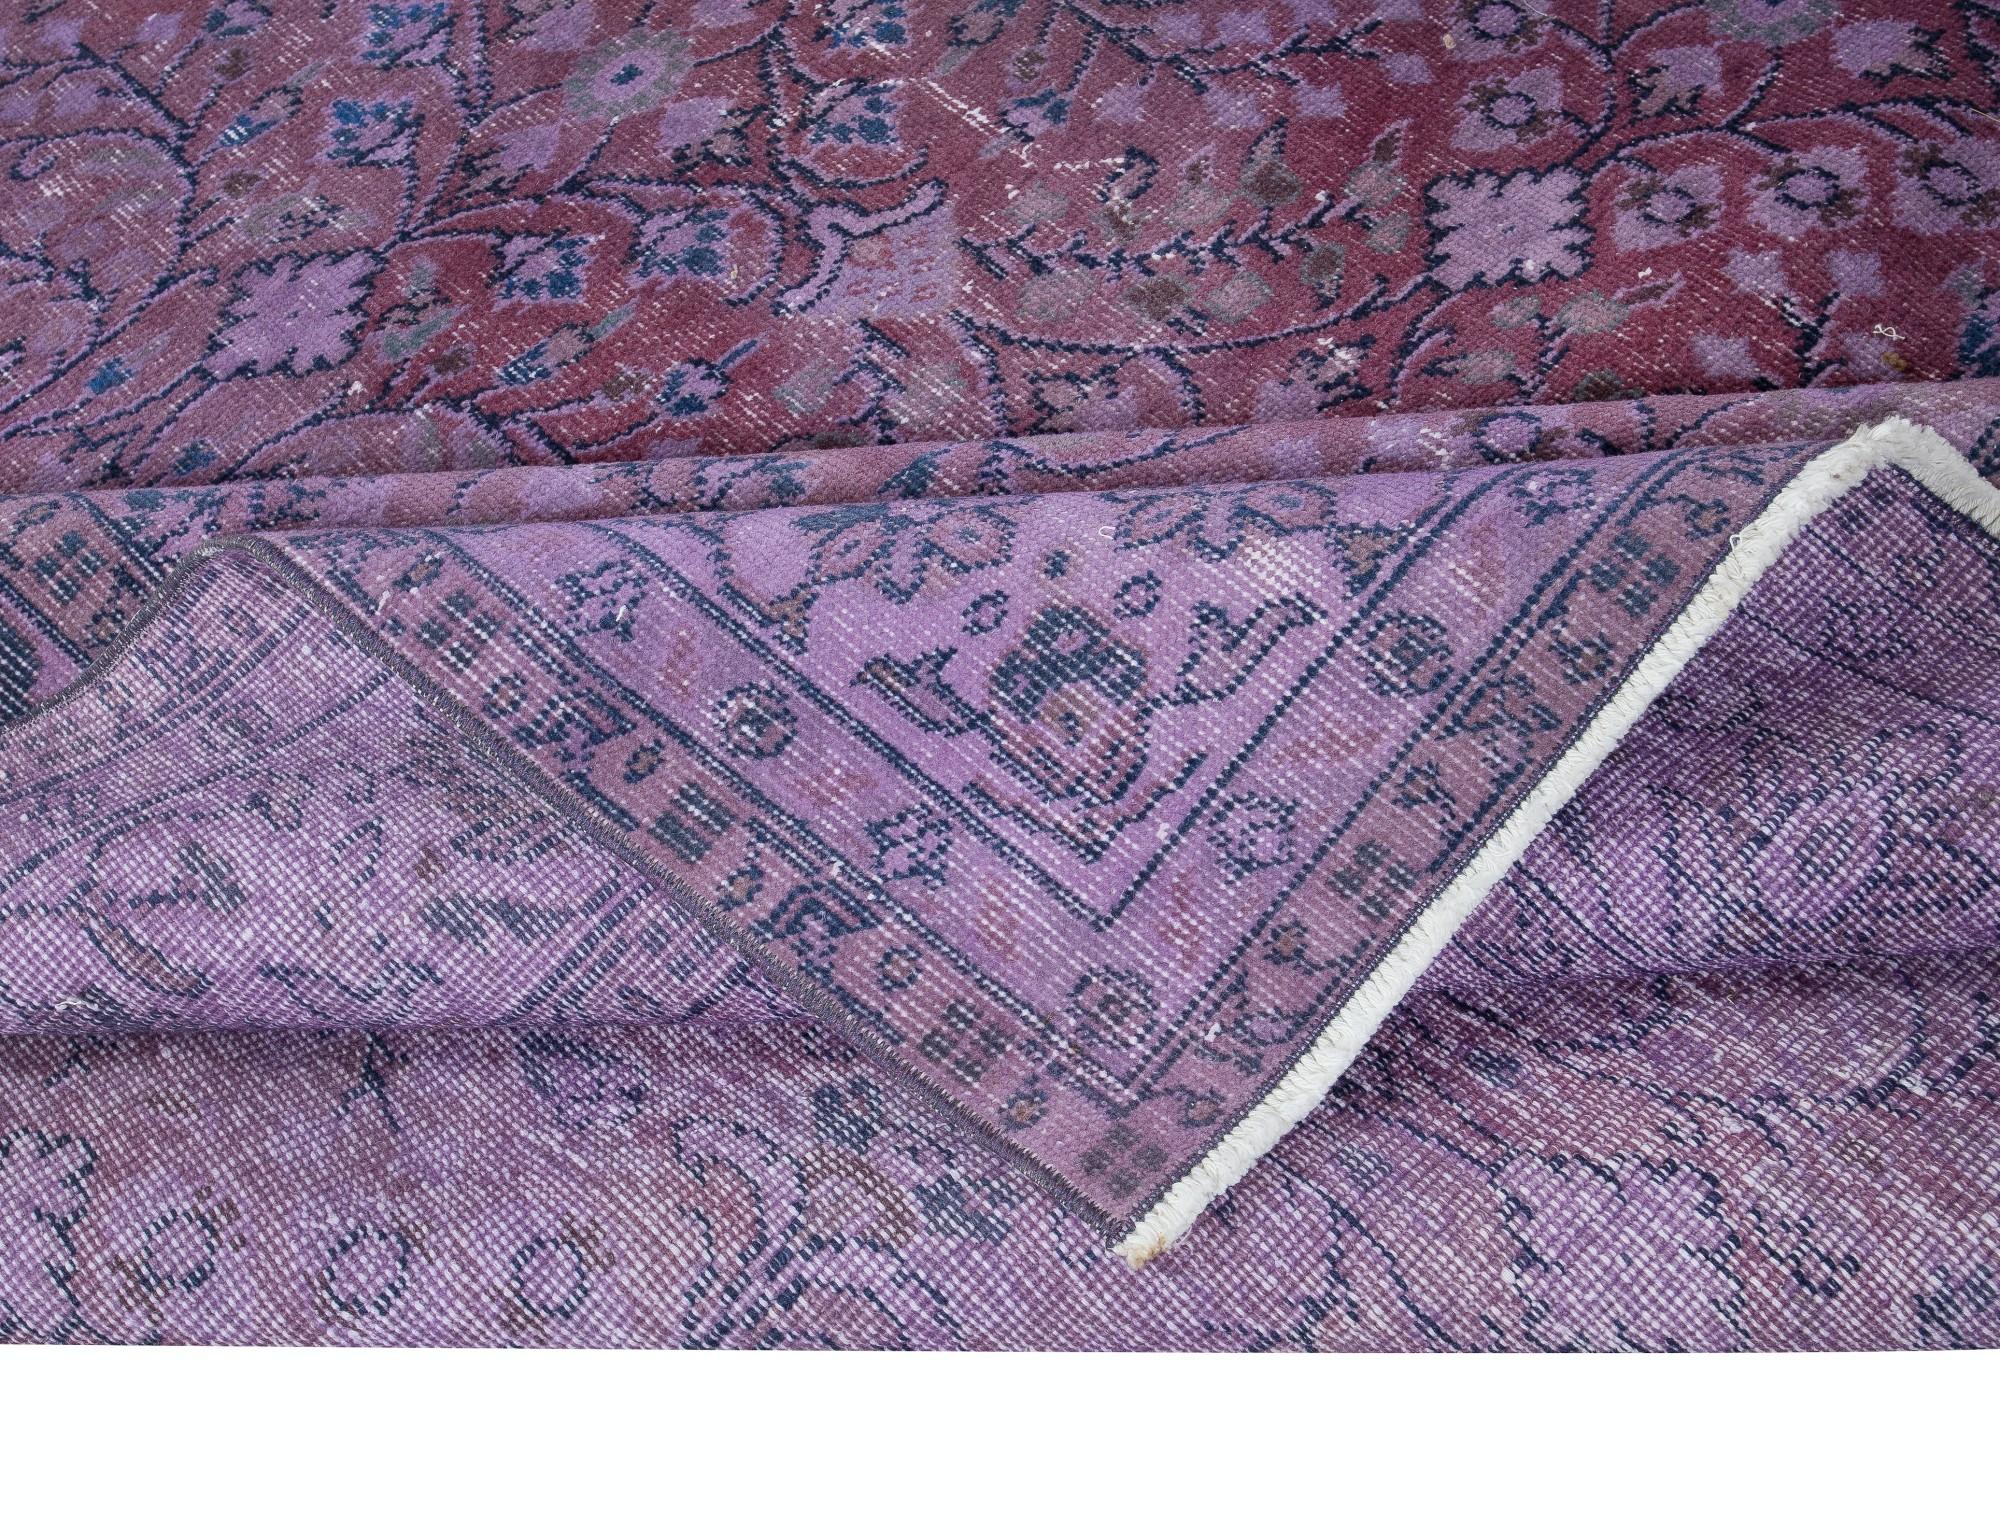 6.3x9.5 Ft Floral gemusterten handgefertigten türkischen Bereich Teppich in Mulberry lila Töne (Türkisch)